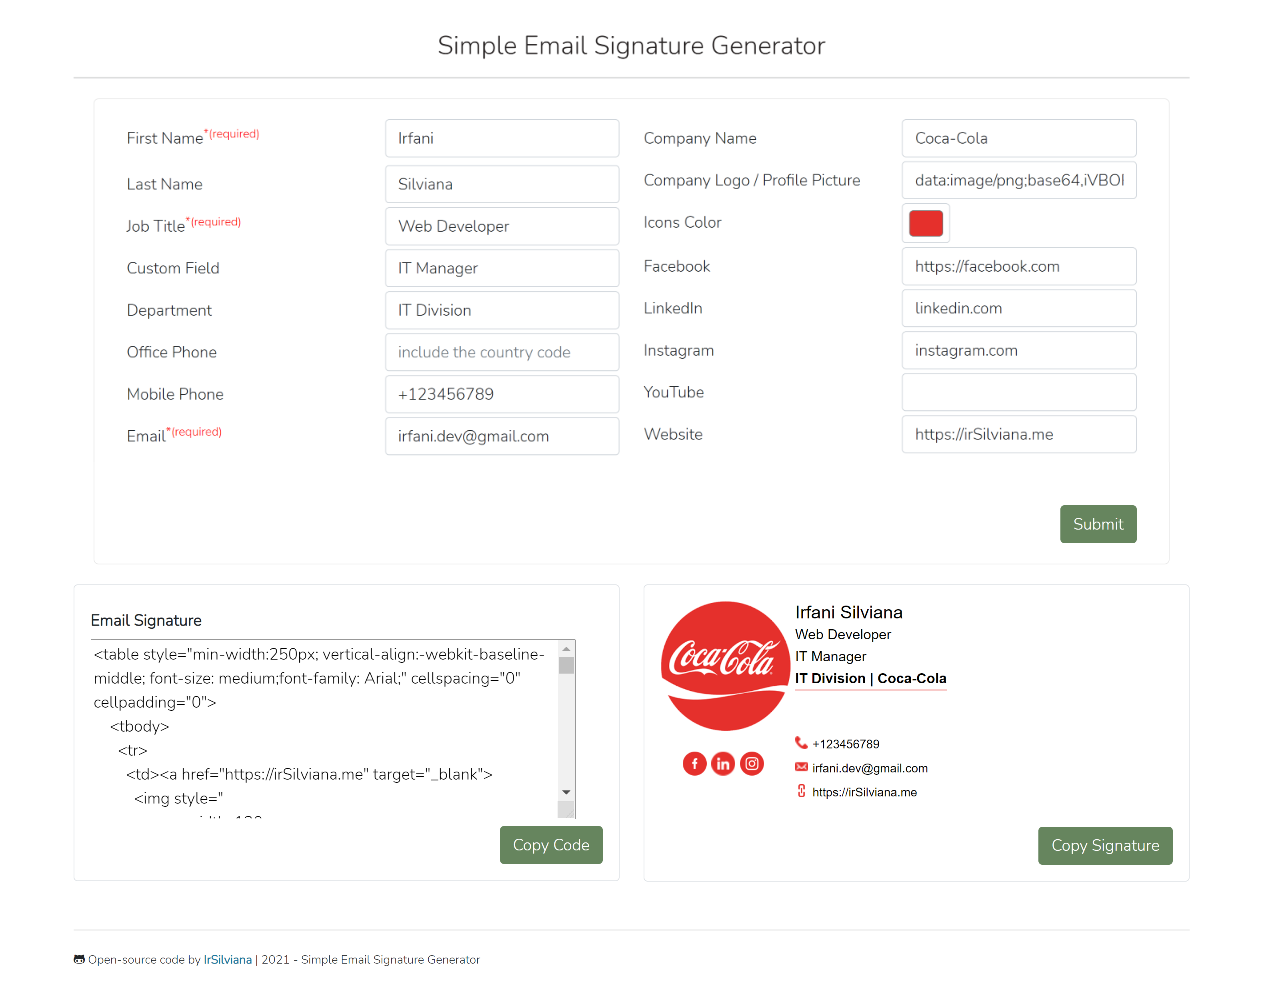 email signature generator